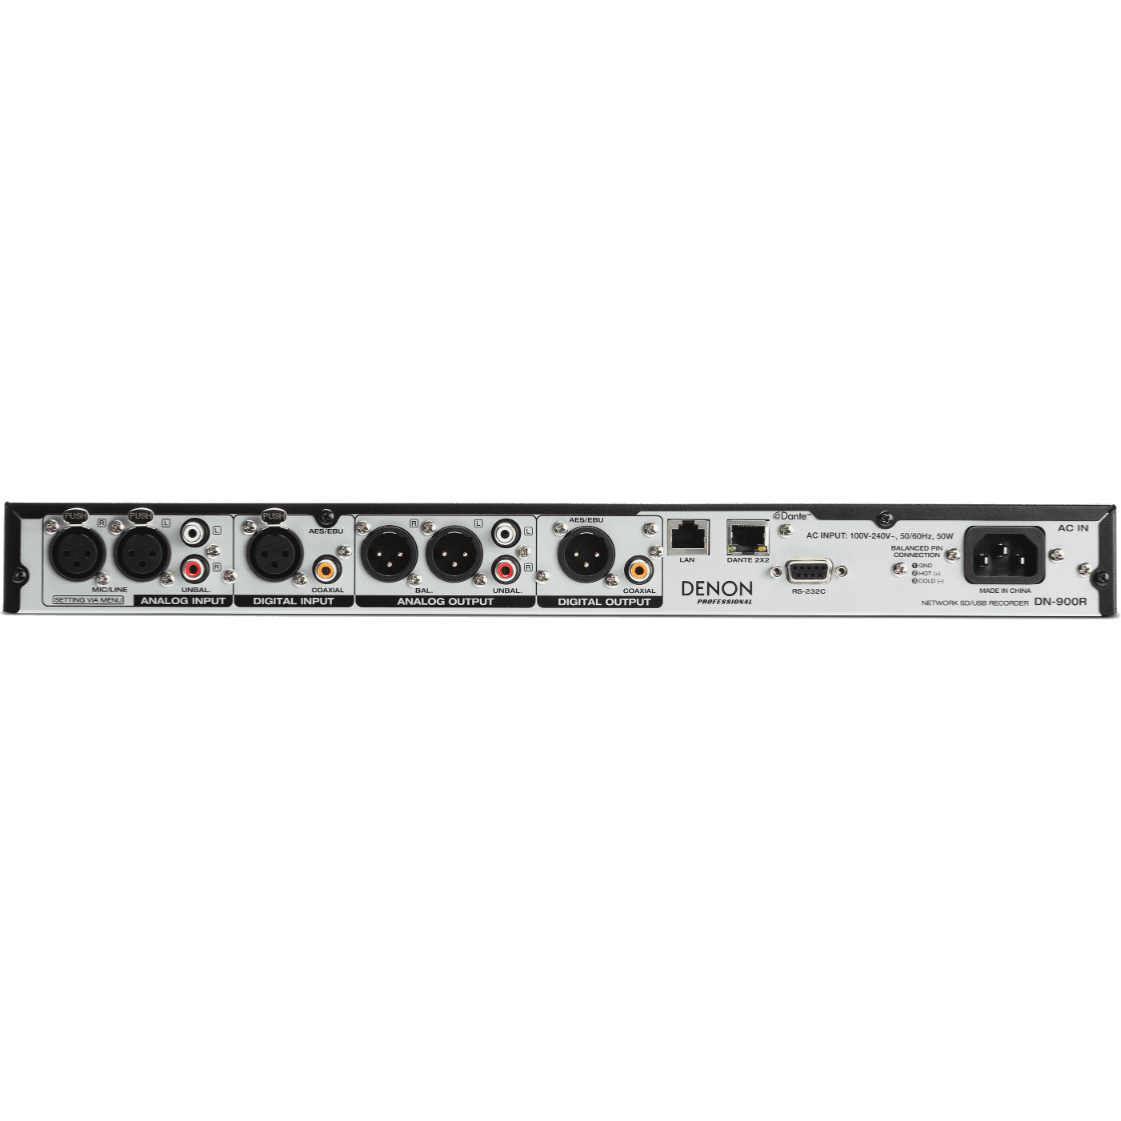 Denon Pro DN-900R Enregistreur / Lecteur audio SD/SDHC - USB - LAN - DANTE